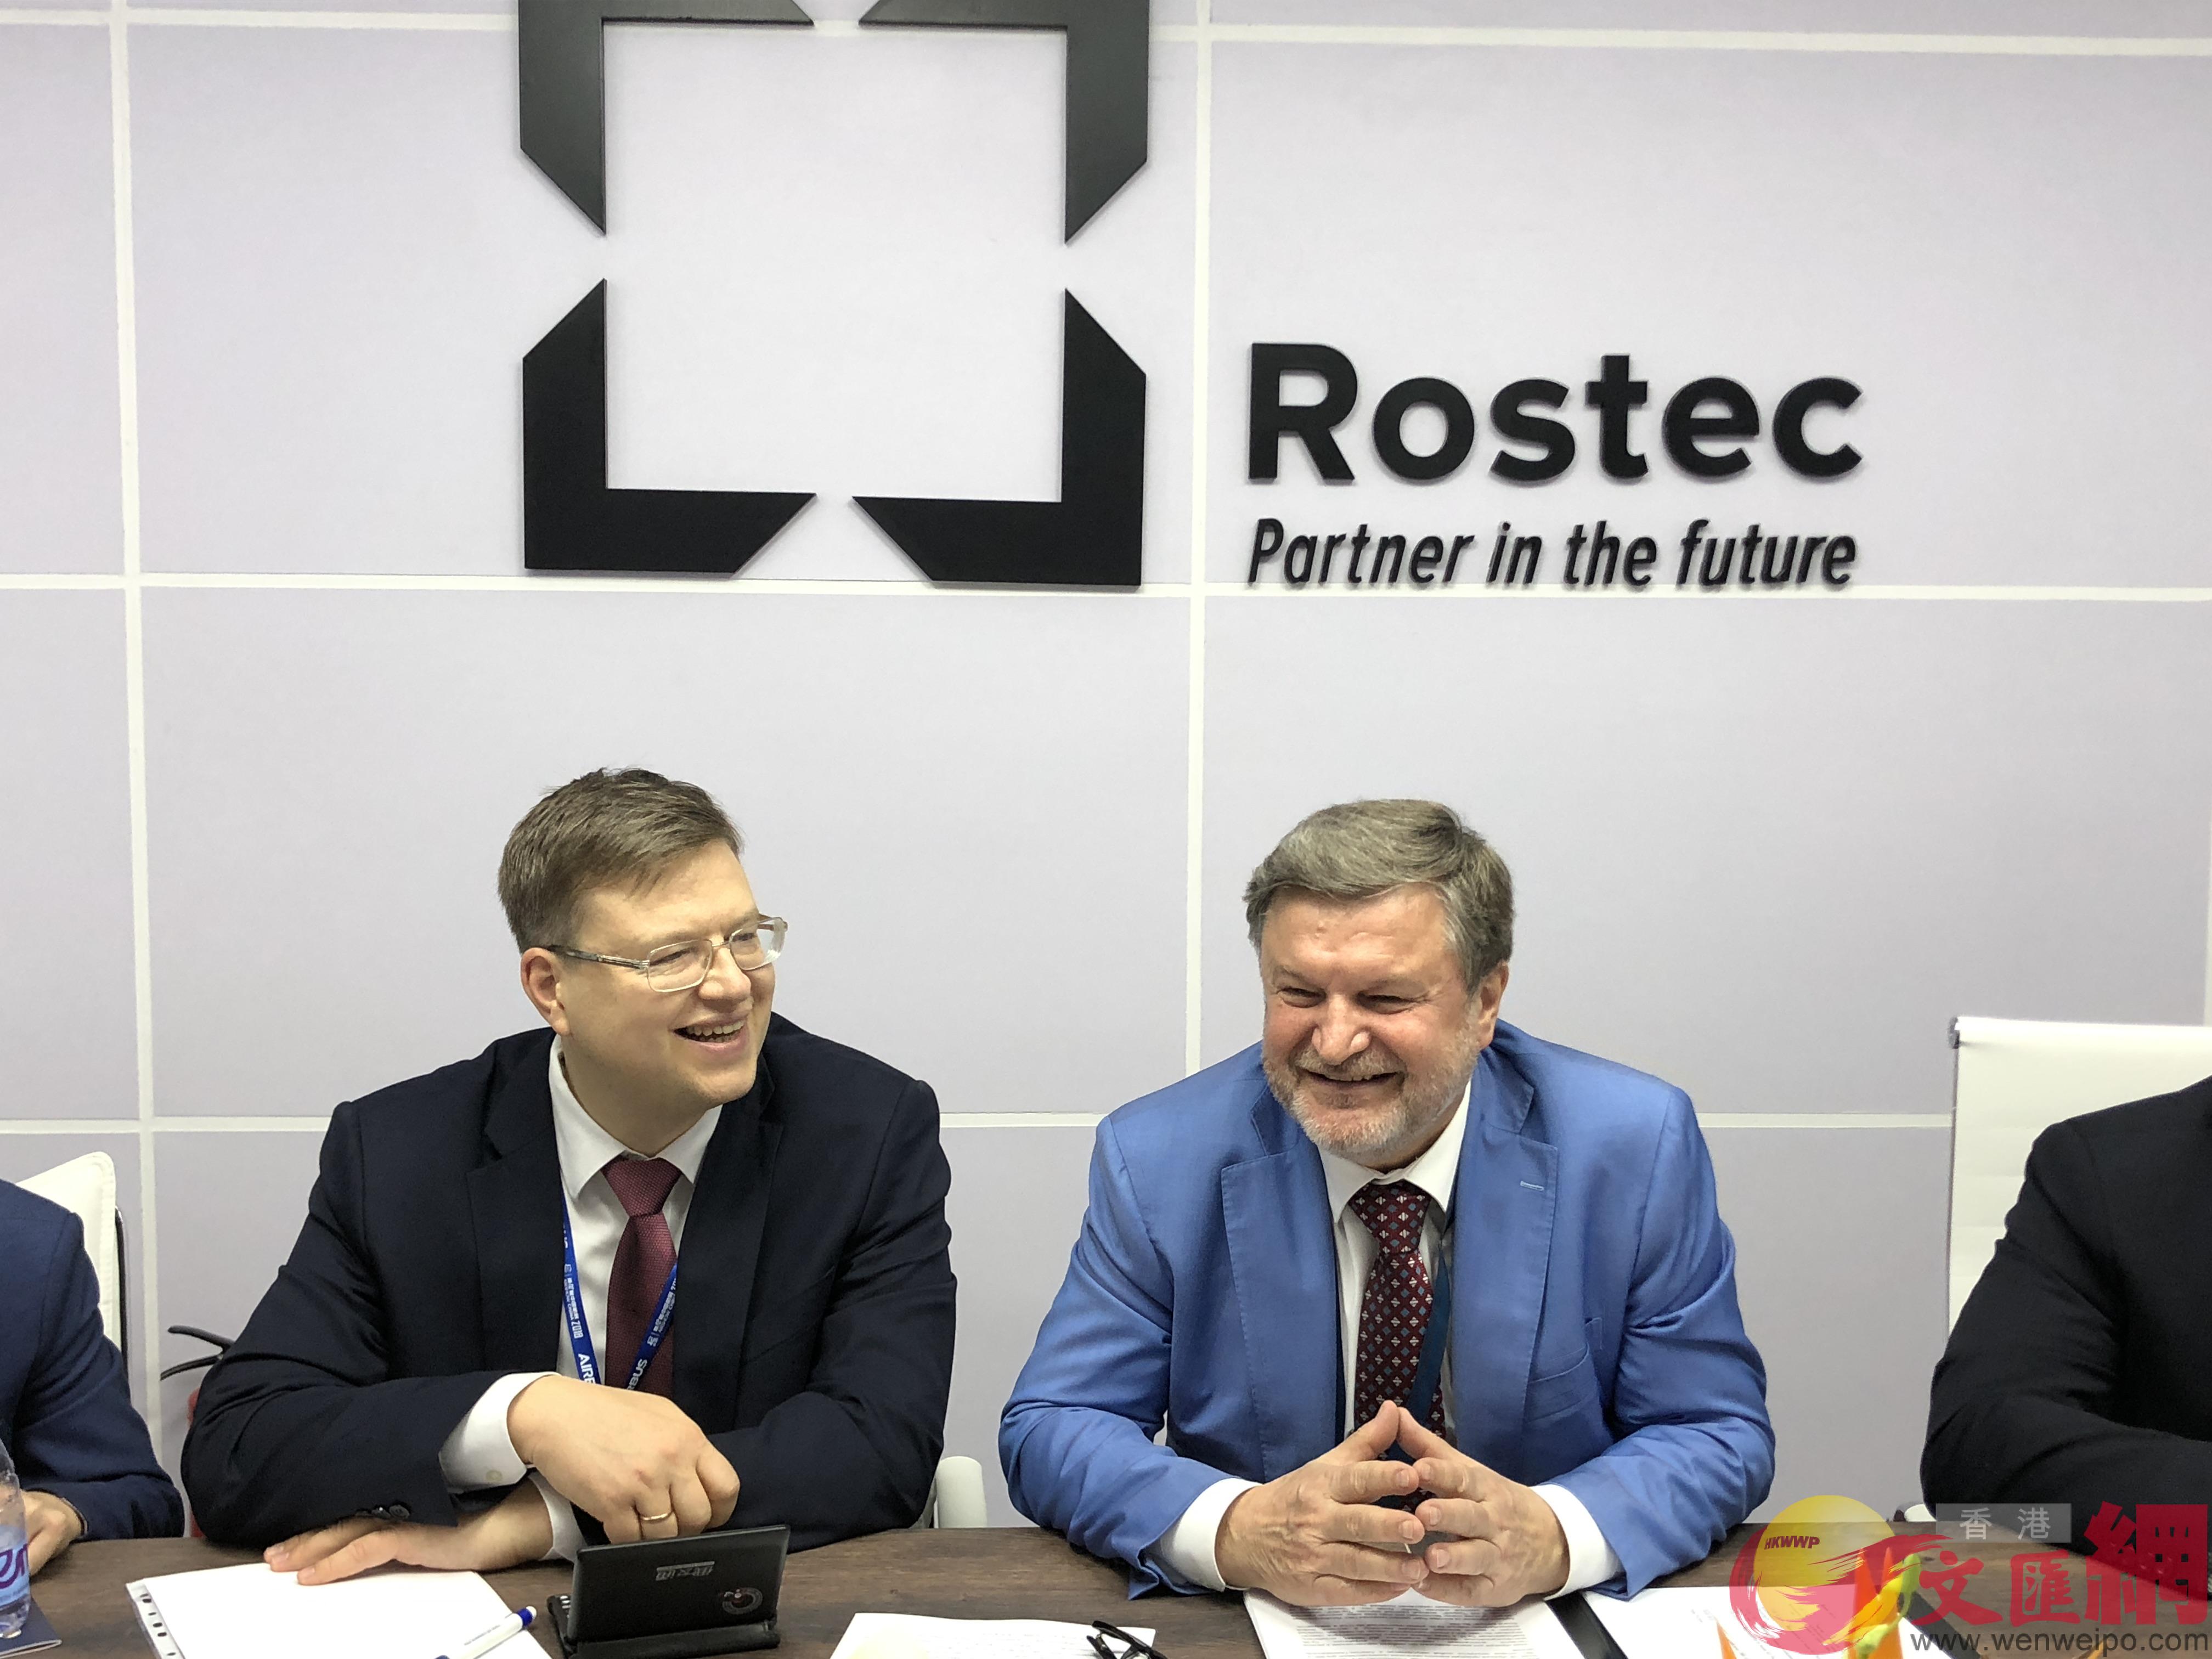 俄羅斯技術國家集團]Rostec^國際合作與區域政策總監維克托P尼古拉耶維奇P克拉朵夫]右^接受記者專訪C]方俊明攝^